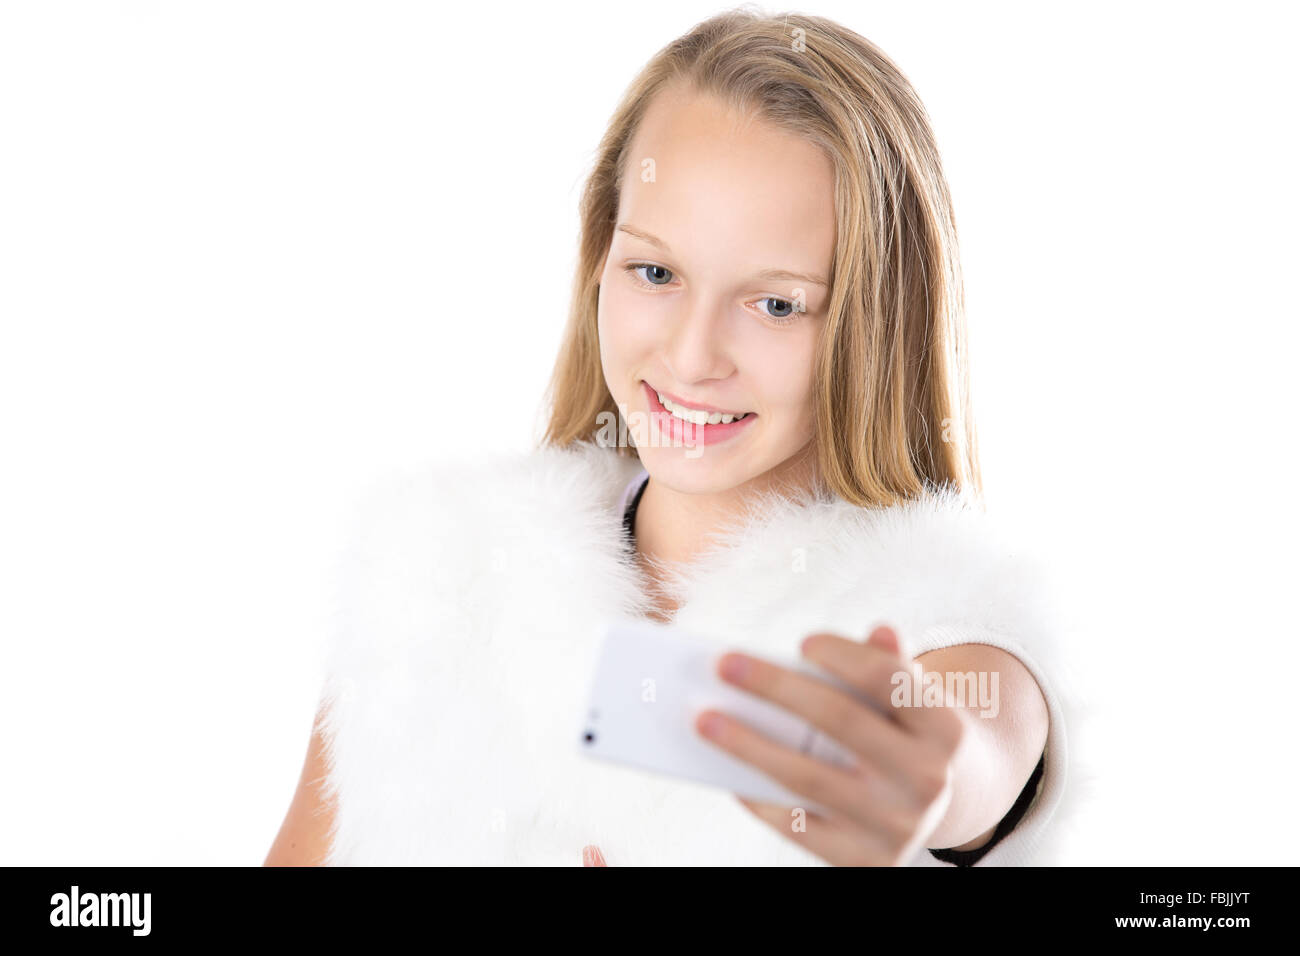 Glücklich niedlich schöne kaukasischen blonde Mädchen in weißen pelzigen Outfit nehmen Selfie mit Smartphone, posieren für Selbstporträt Stockfoto